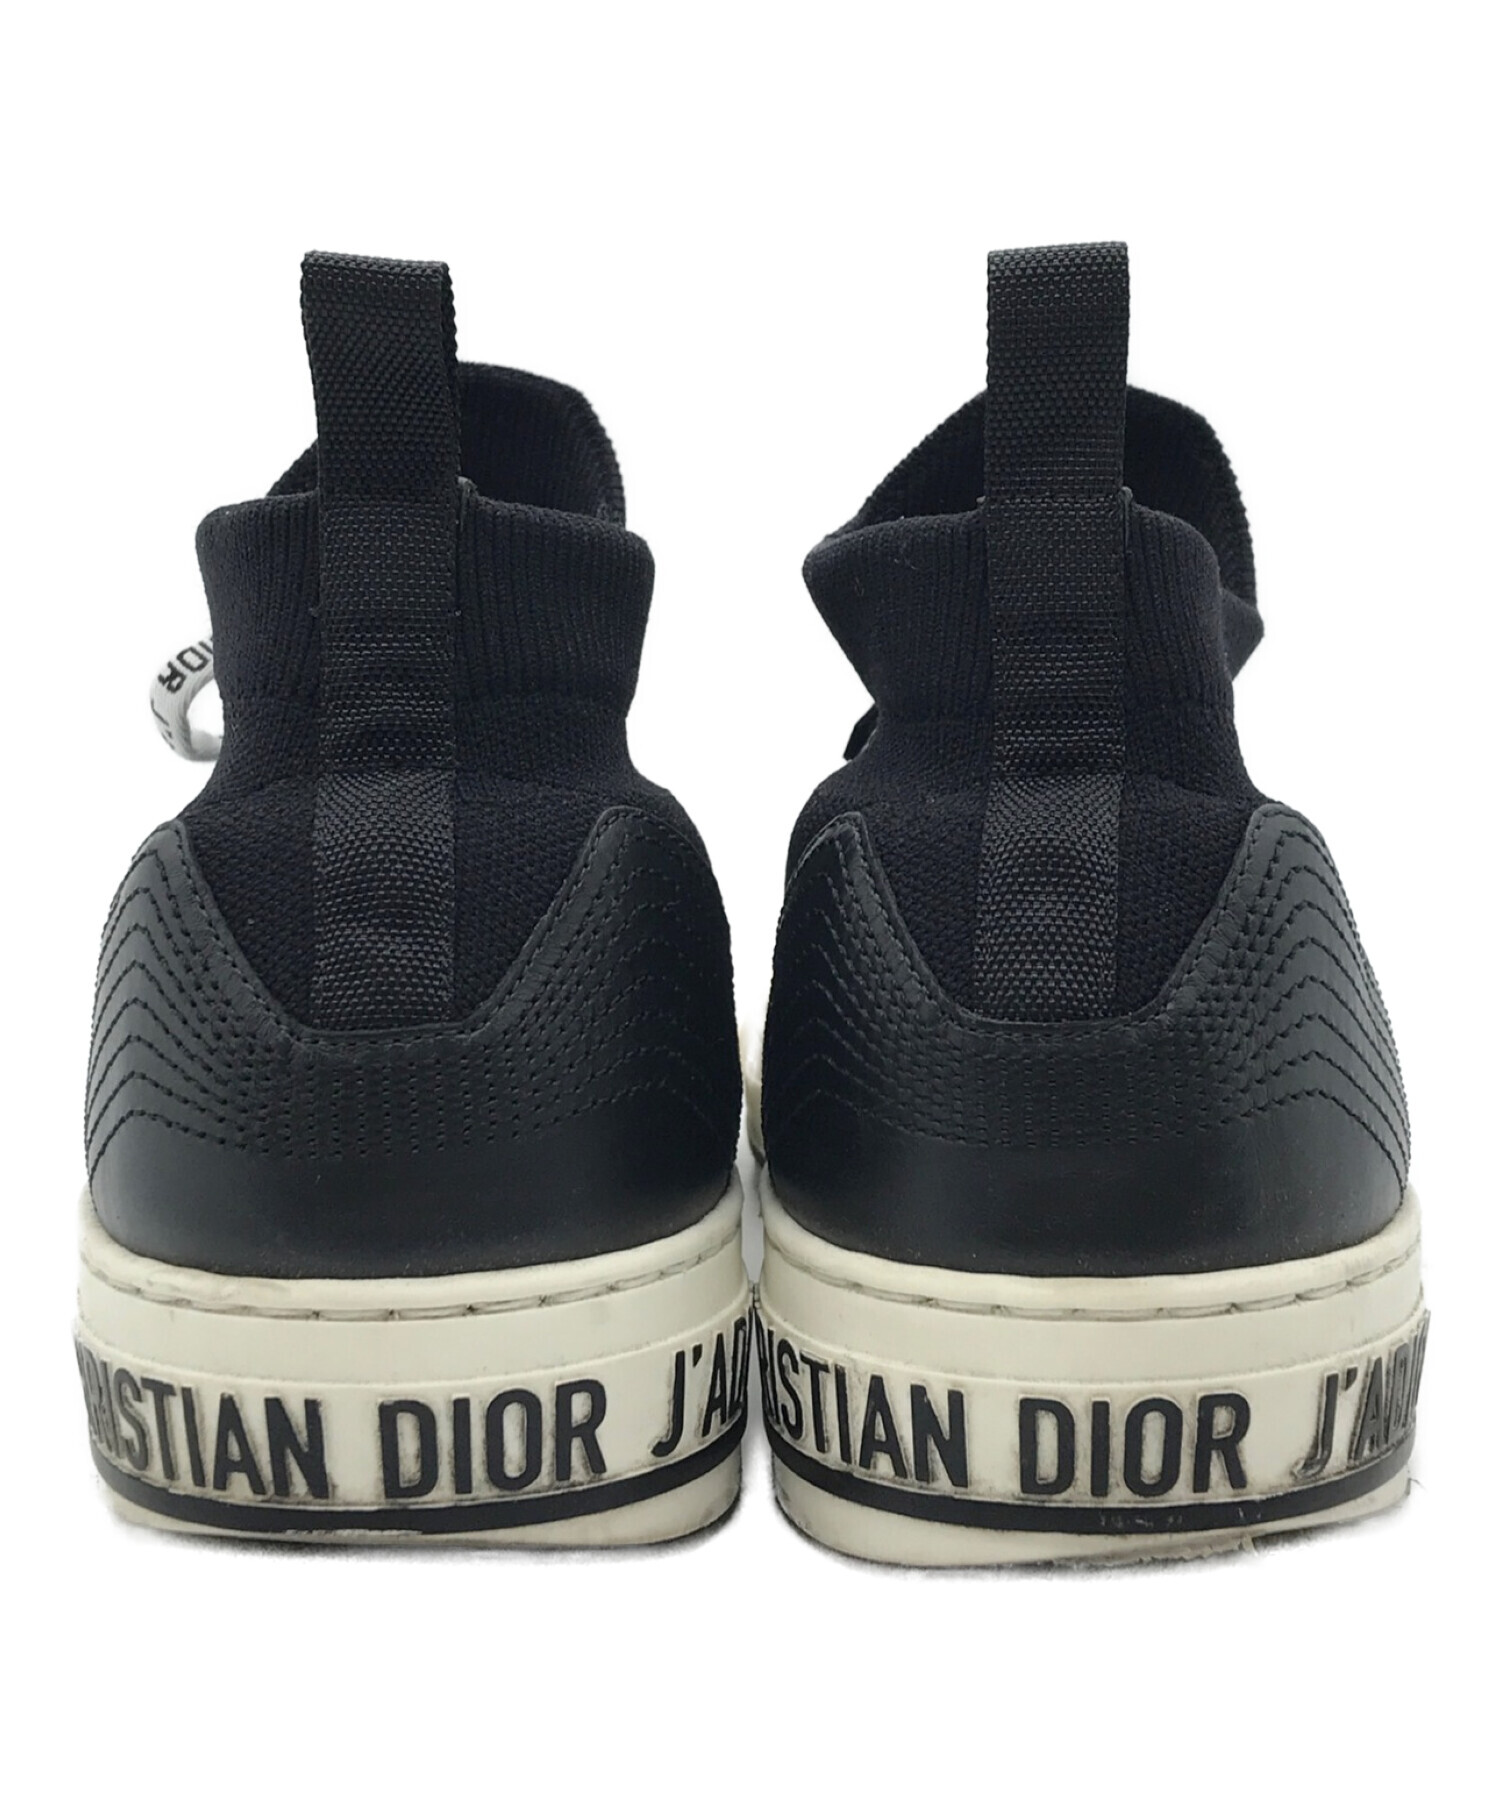 Christian Dior (クリスチャン ディオール) ソックスニットスニーカー ブラック サイズ:41